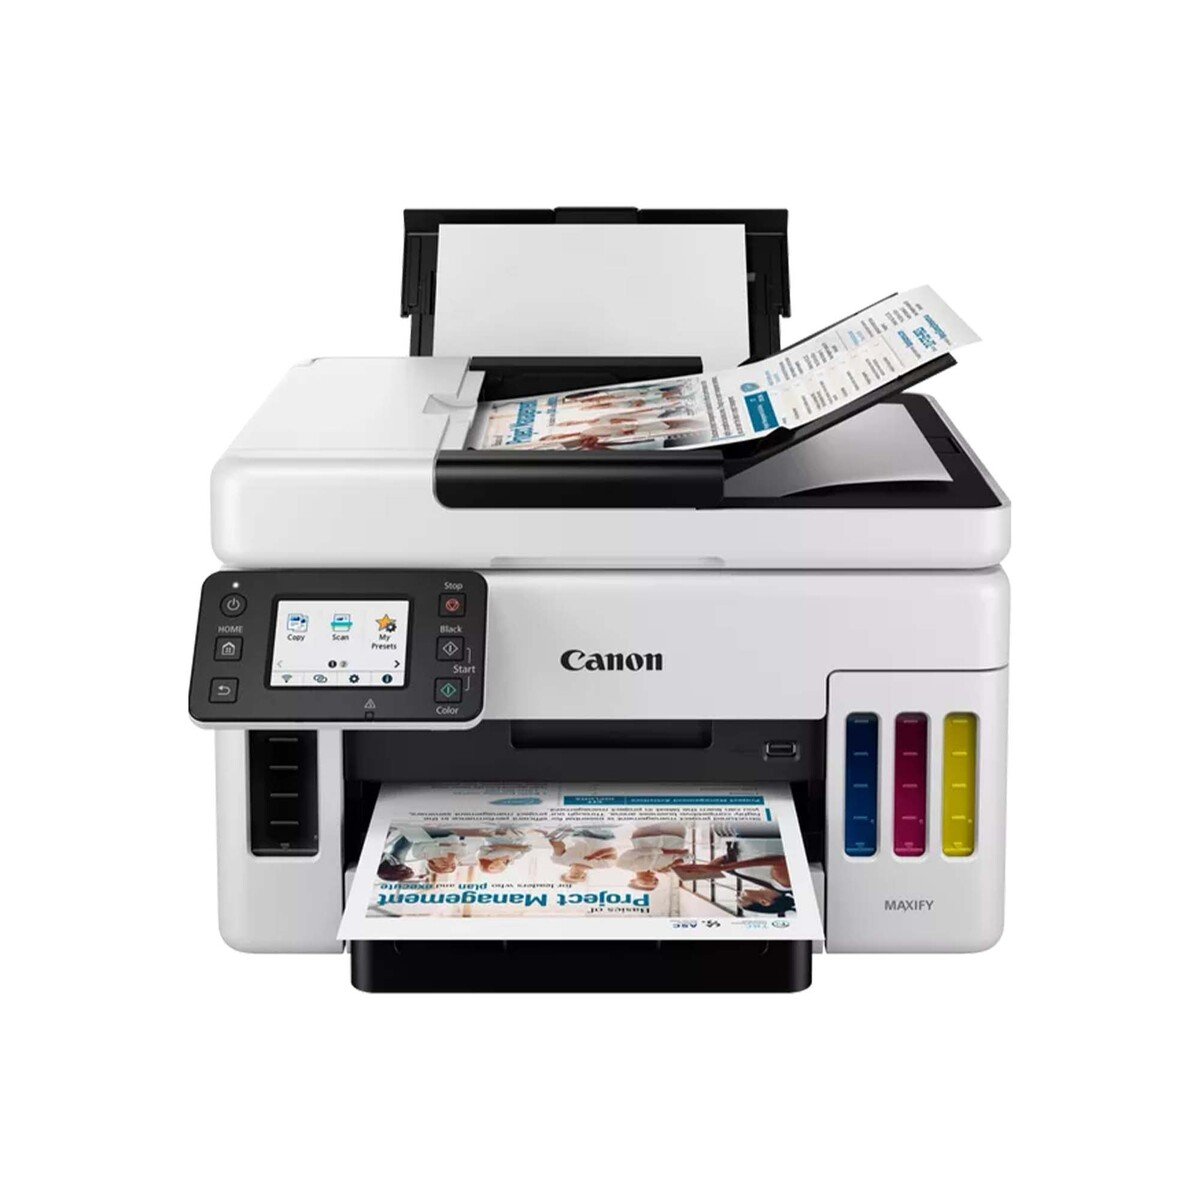 Canon Ink Tank Printer Maxify - GX6040